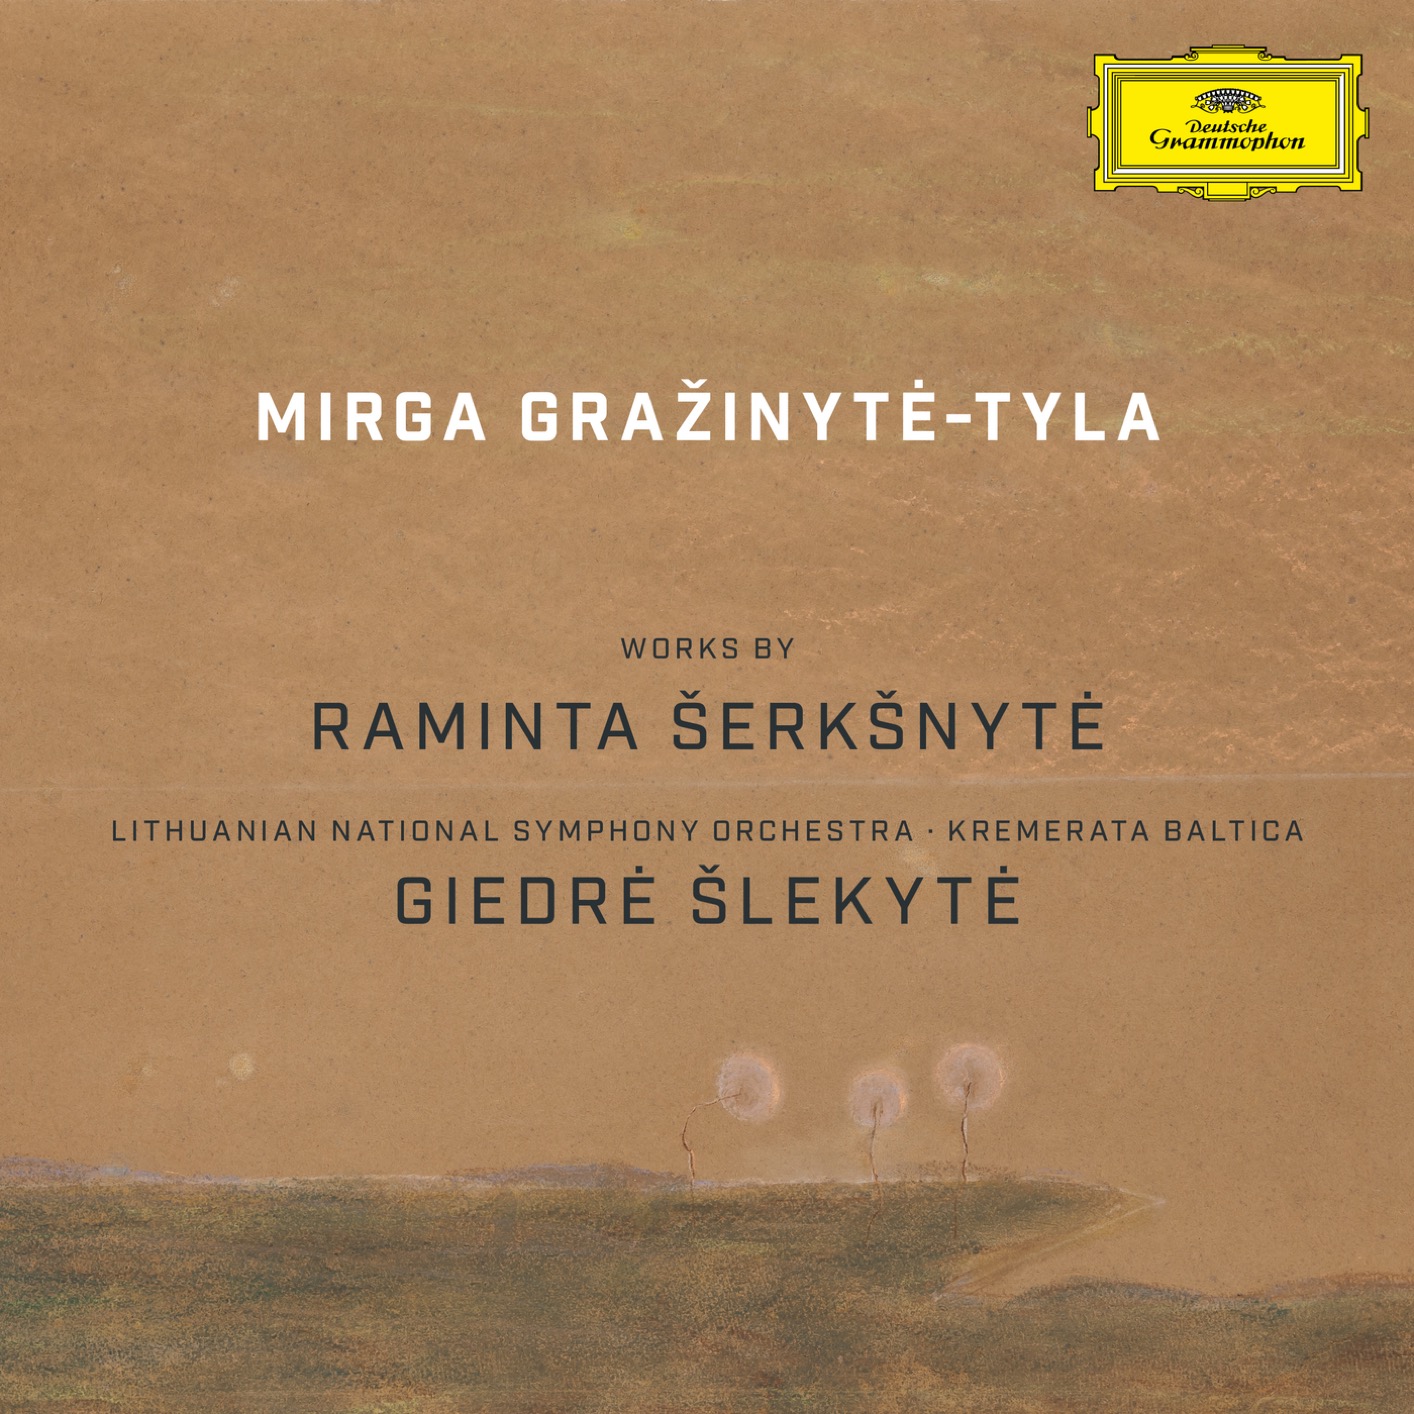 Mirga Grazinyte-Tyla - Works by Raminta Serksnyte (2019) [FLAC 24bit/96kHz]